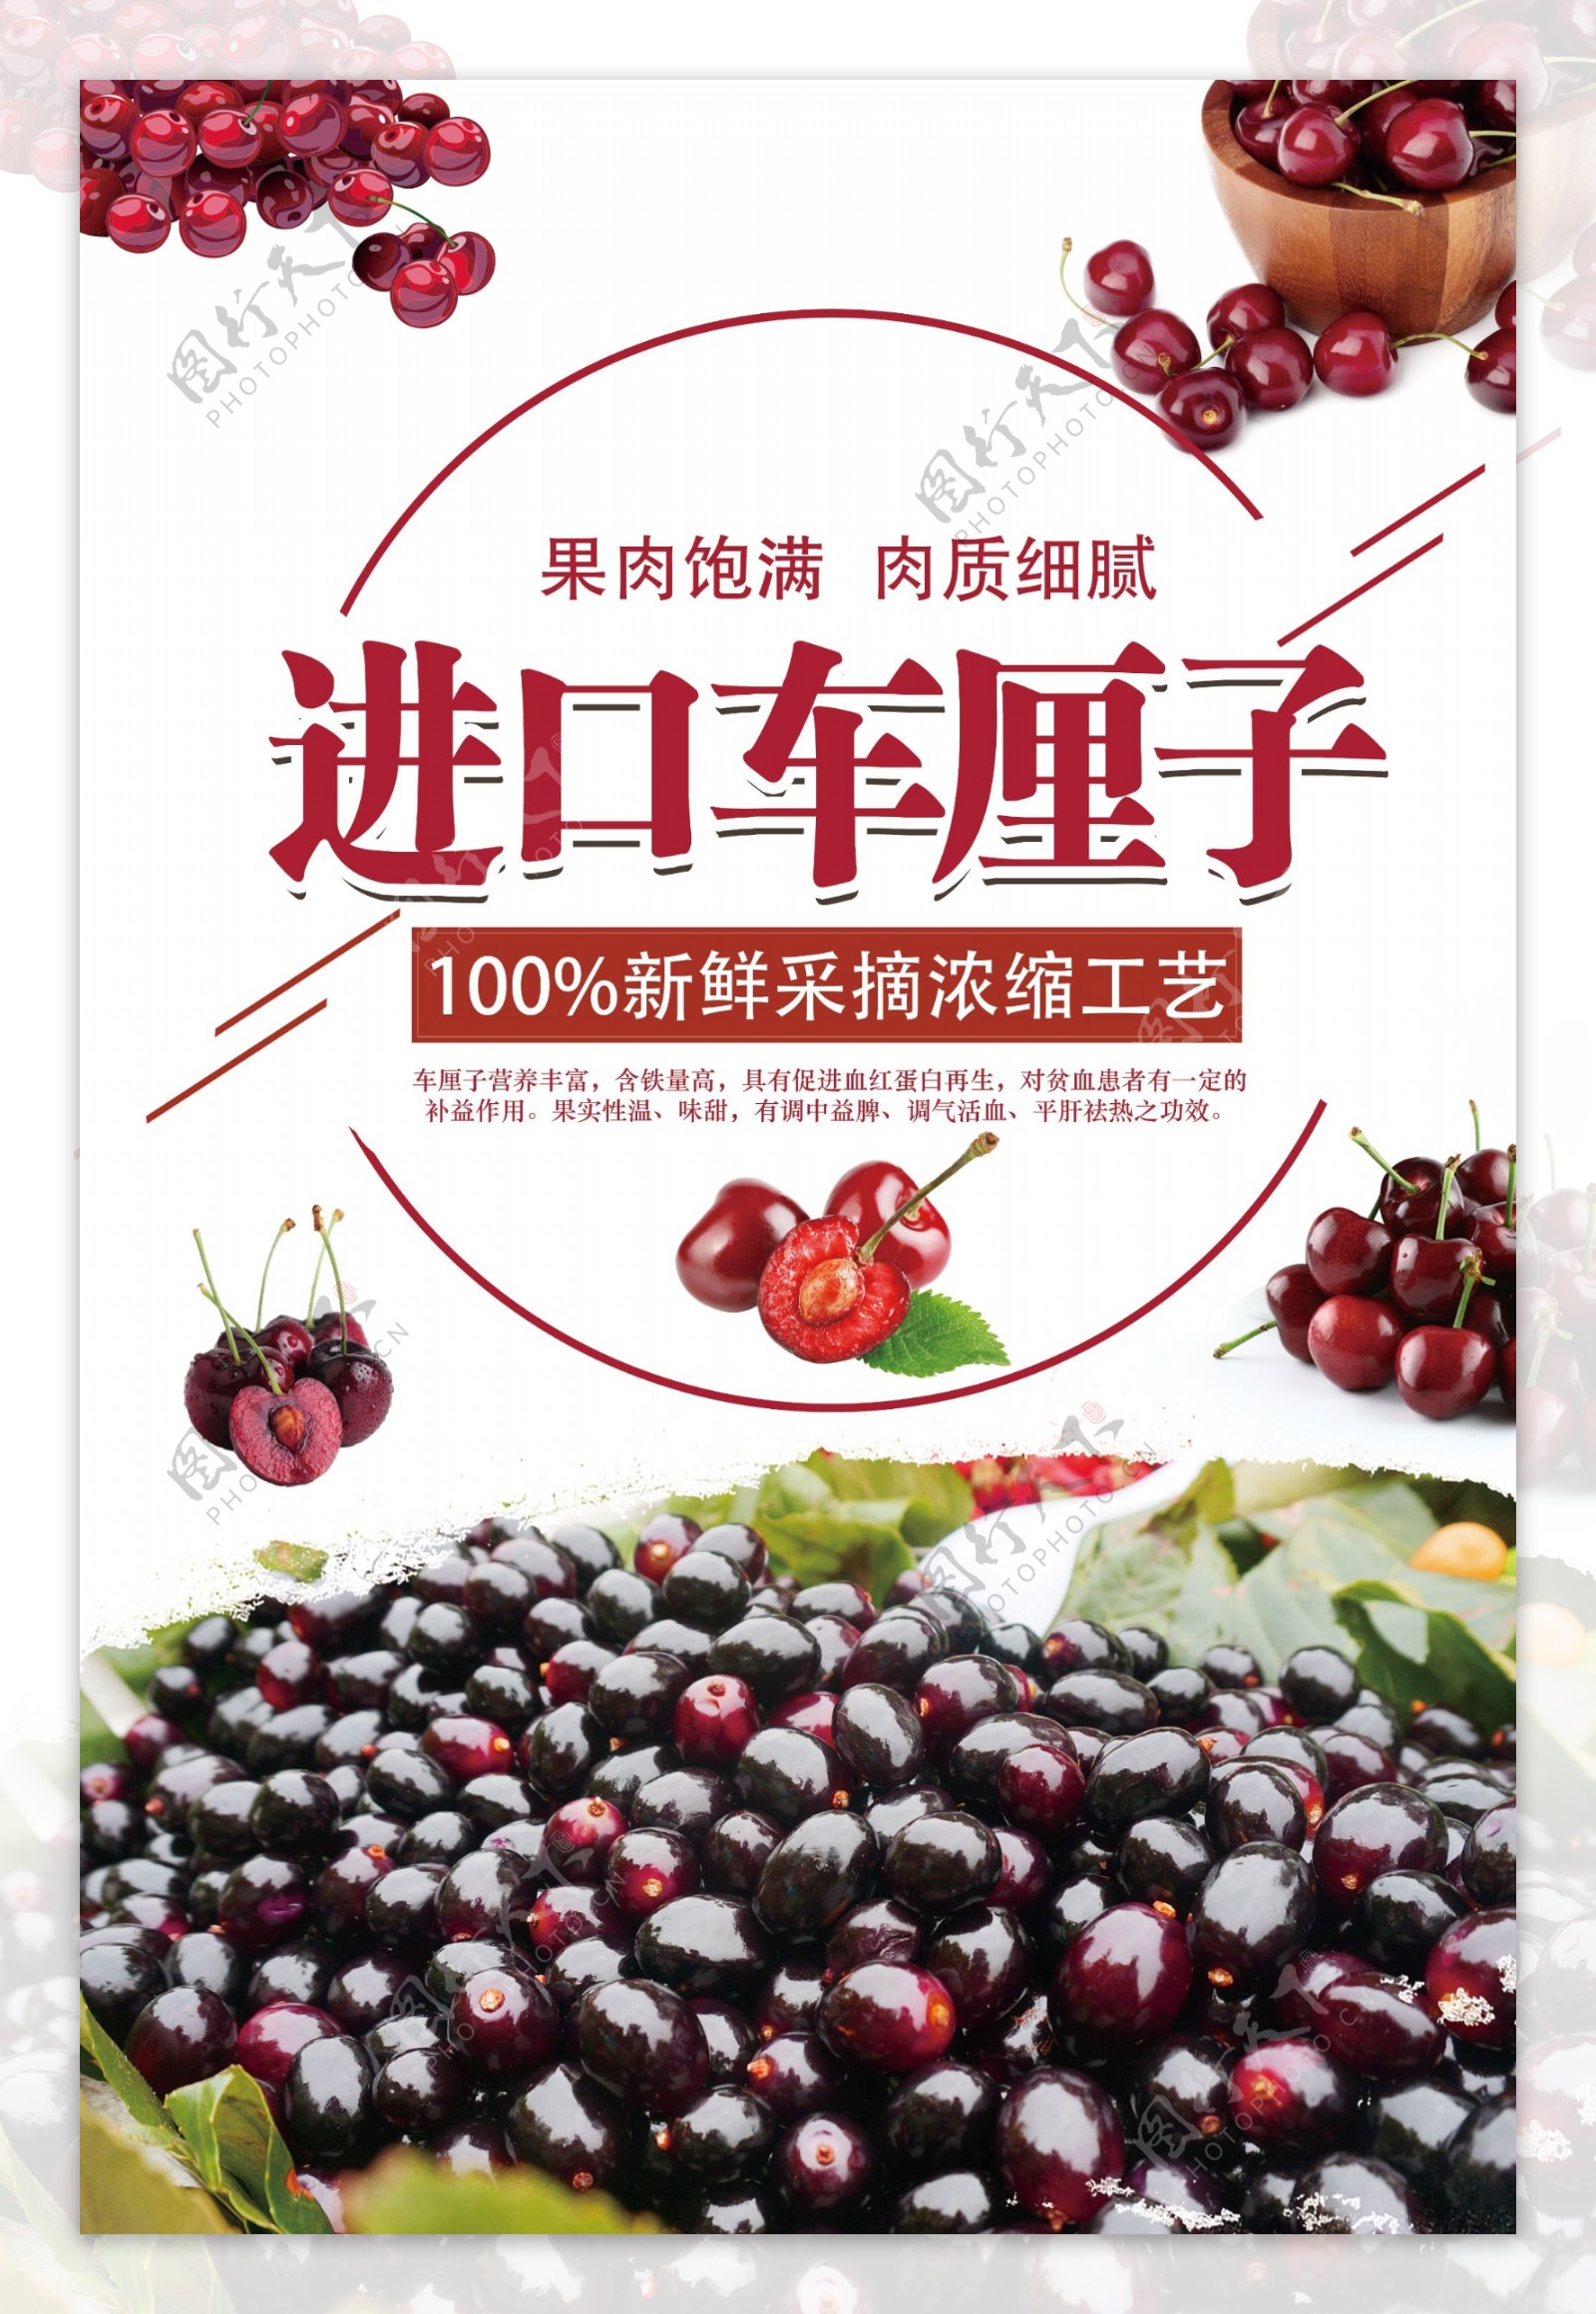 进口车厘子美味水果宣传海报设计